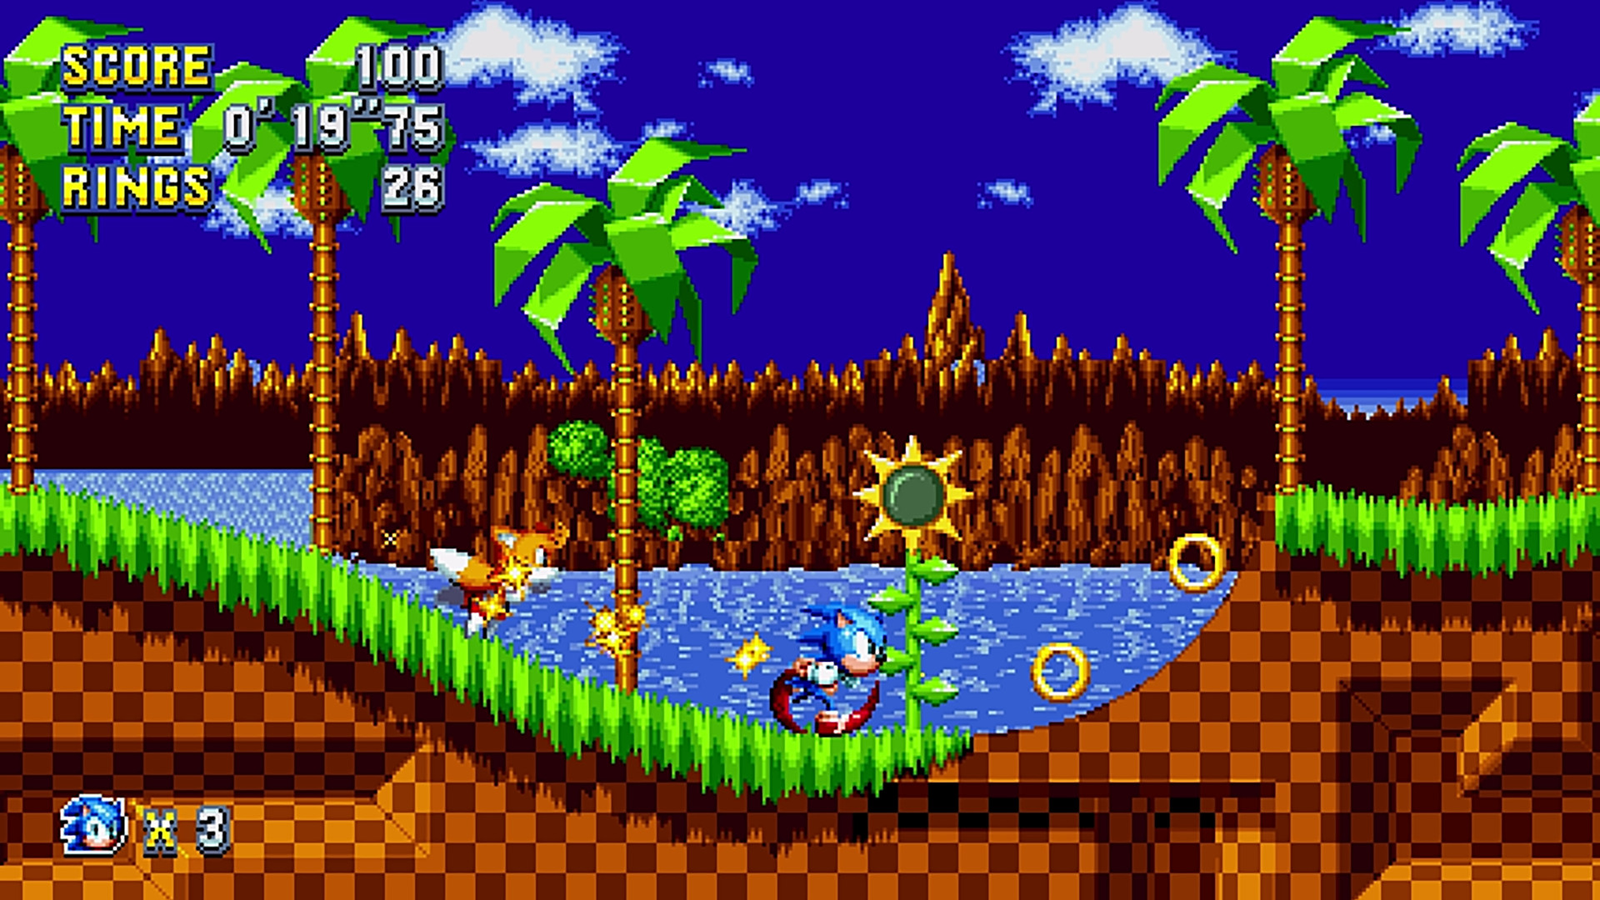 Mania Sonic [Sonic Origins] [Mods]